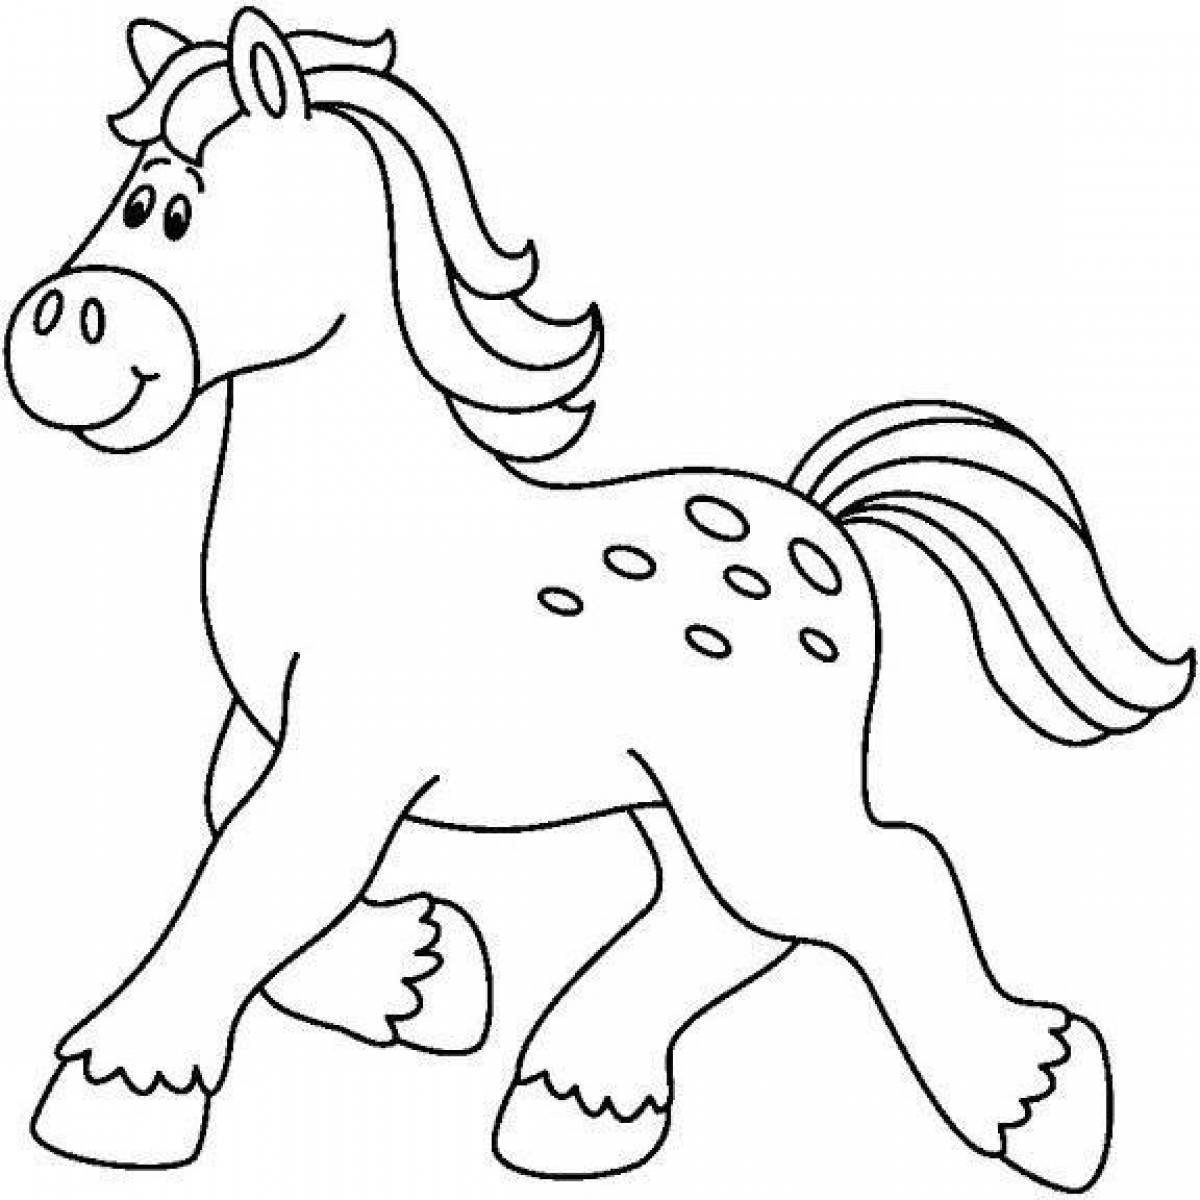 Раскраска энергичная четвертьлошадь лошадь для детей